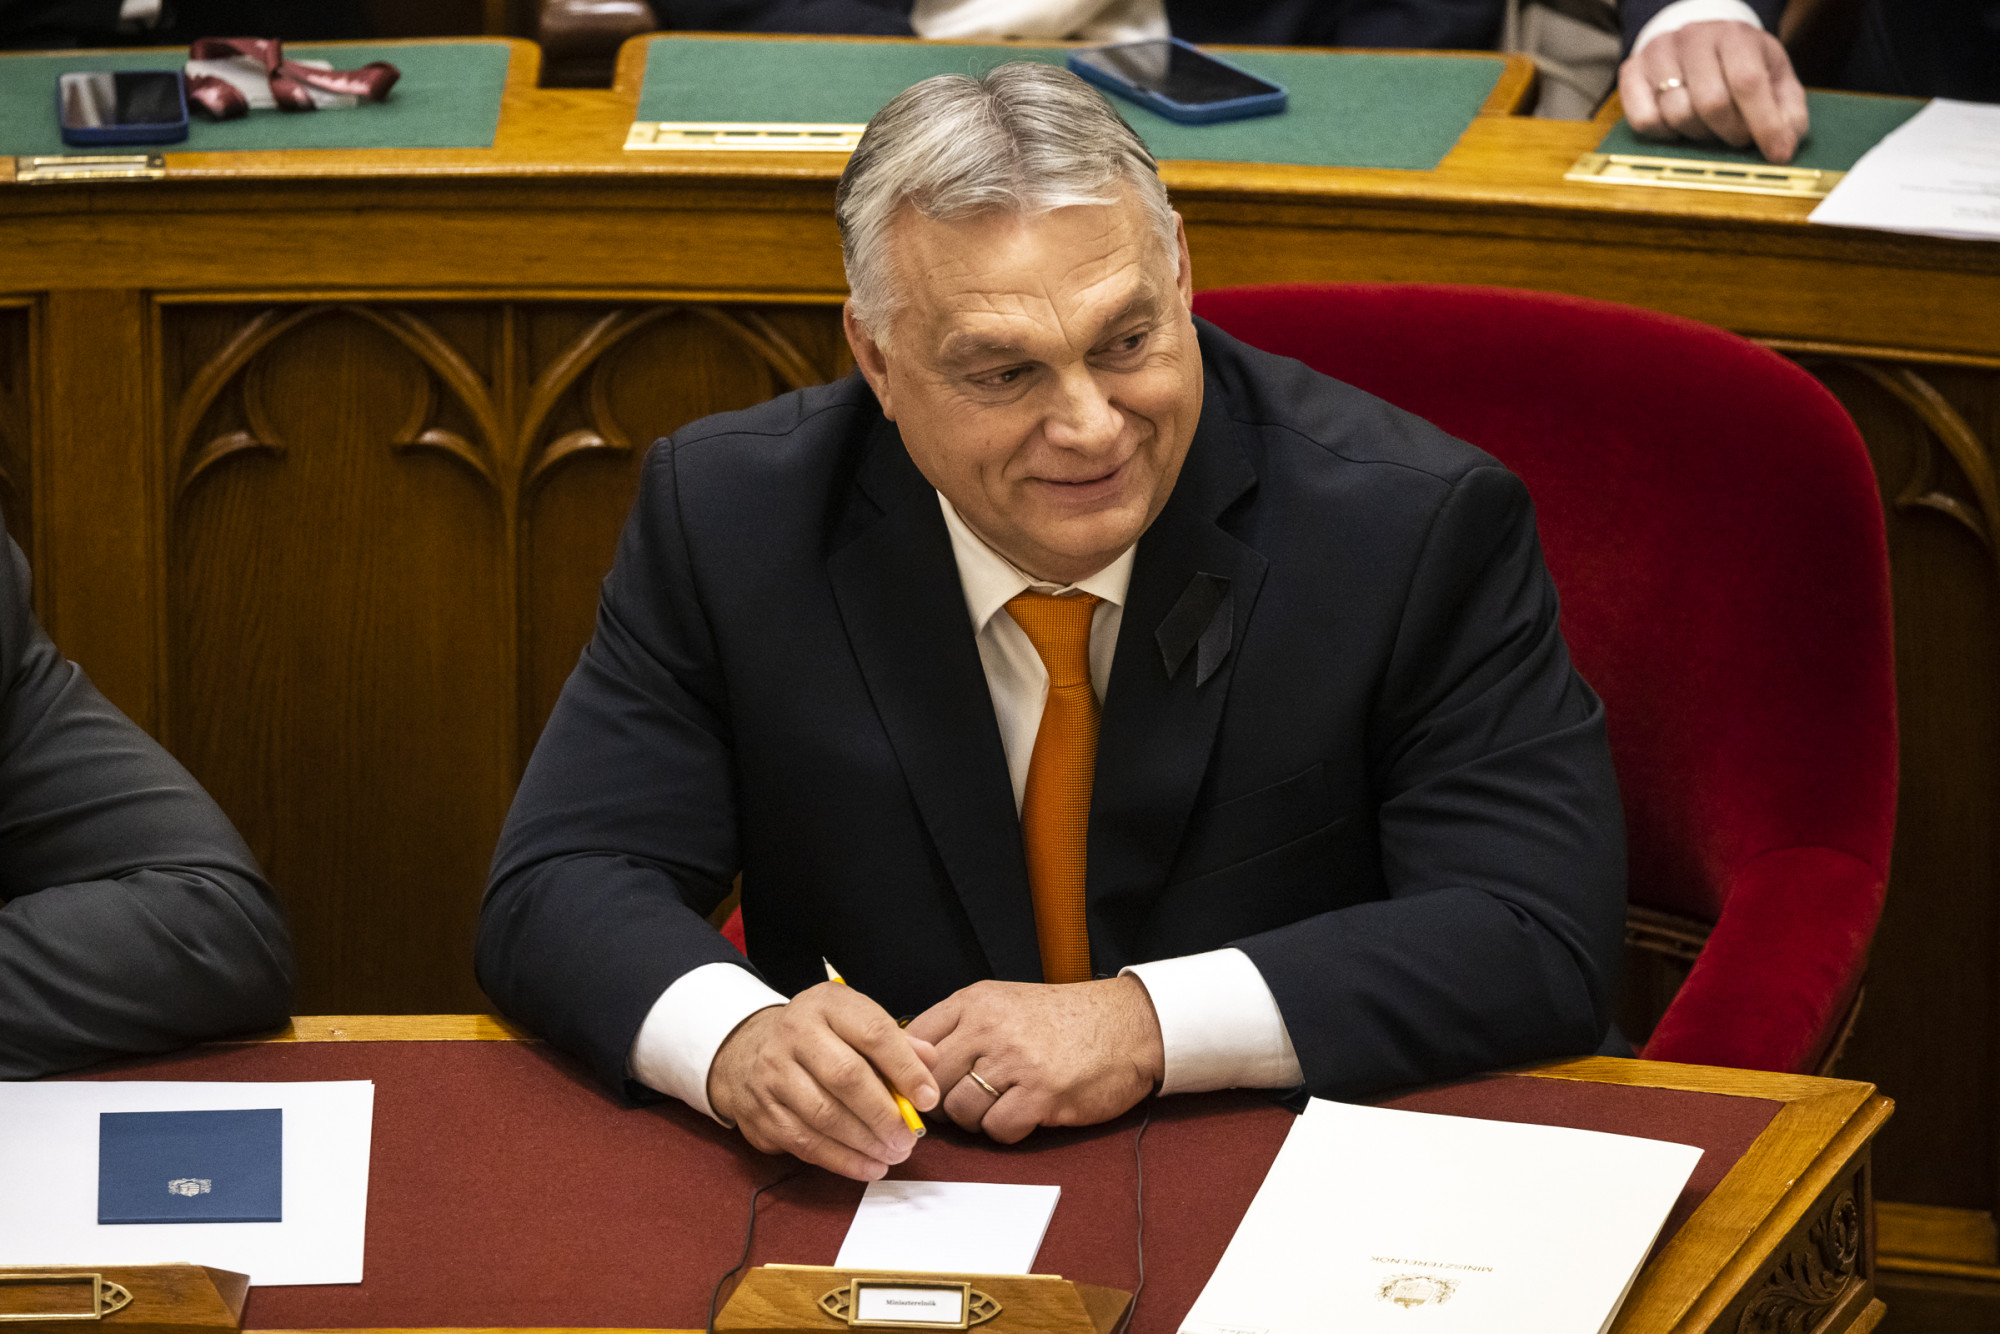 Szép fizetést és jó nagy hatalmat kapnak Orbán tanácsadói